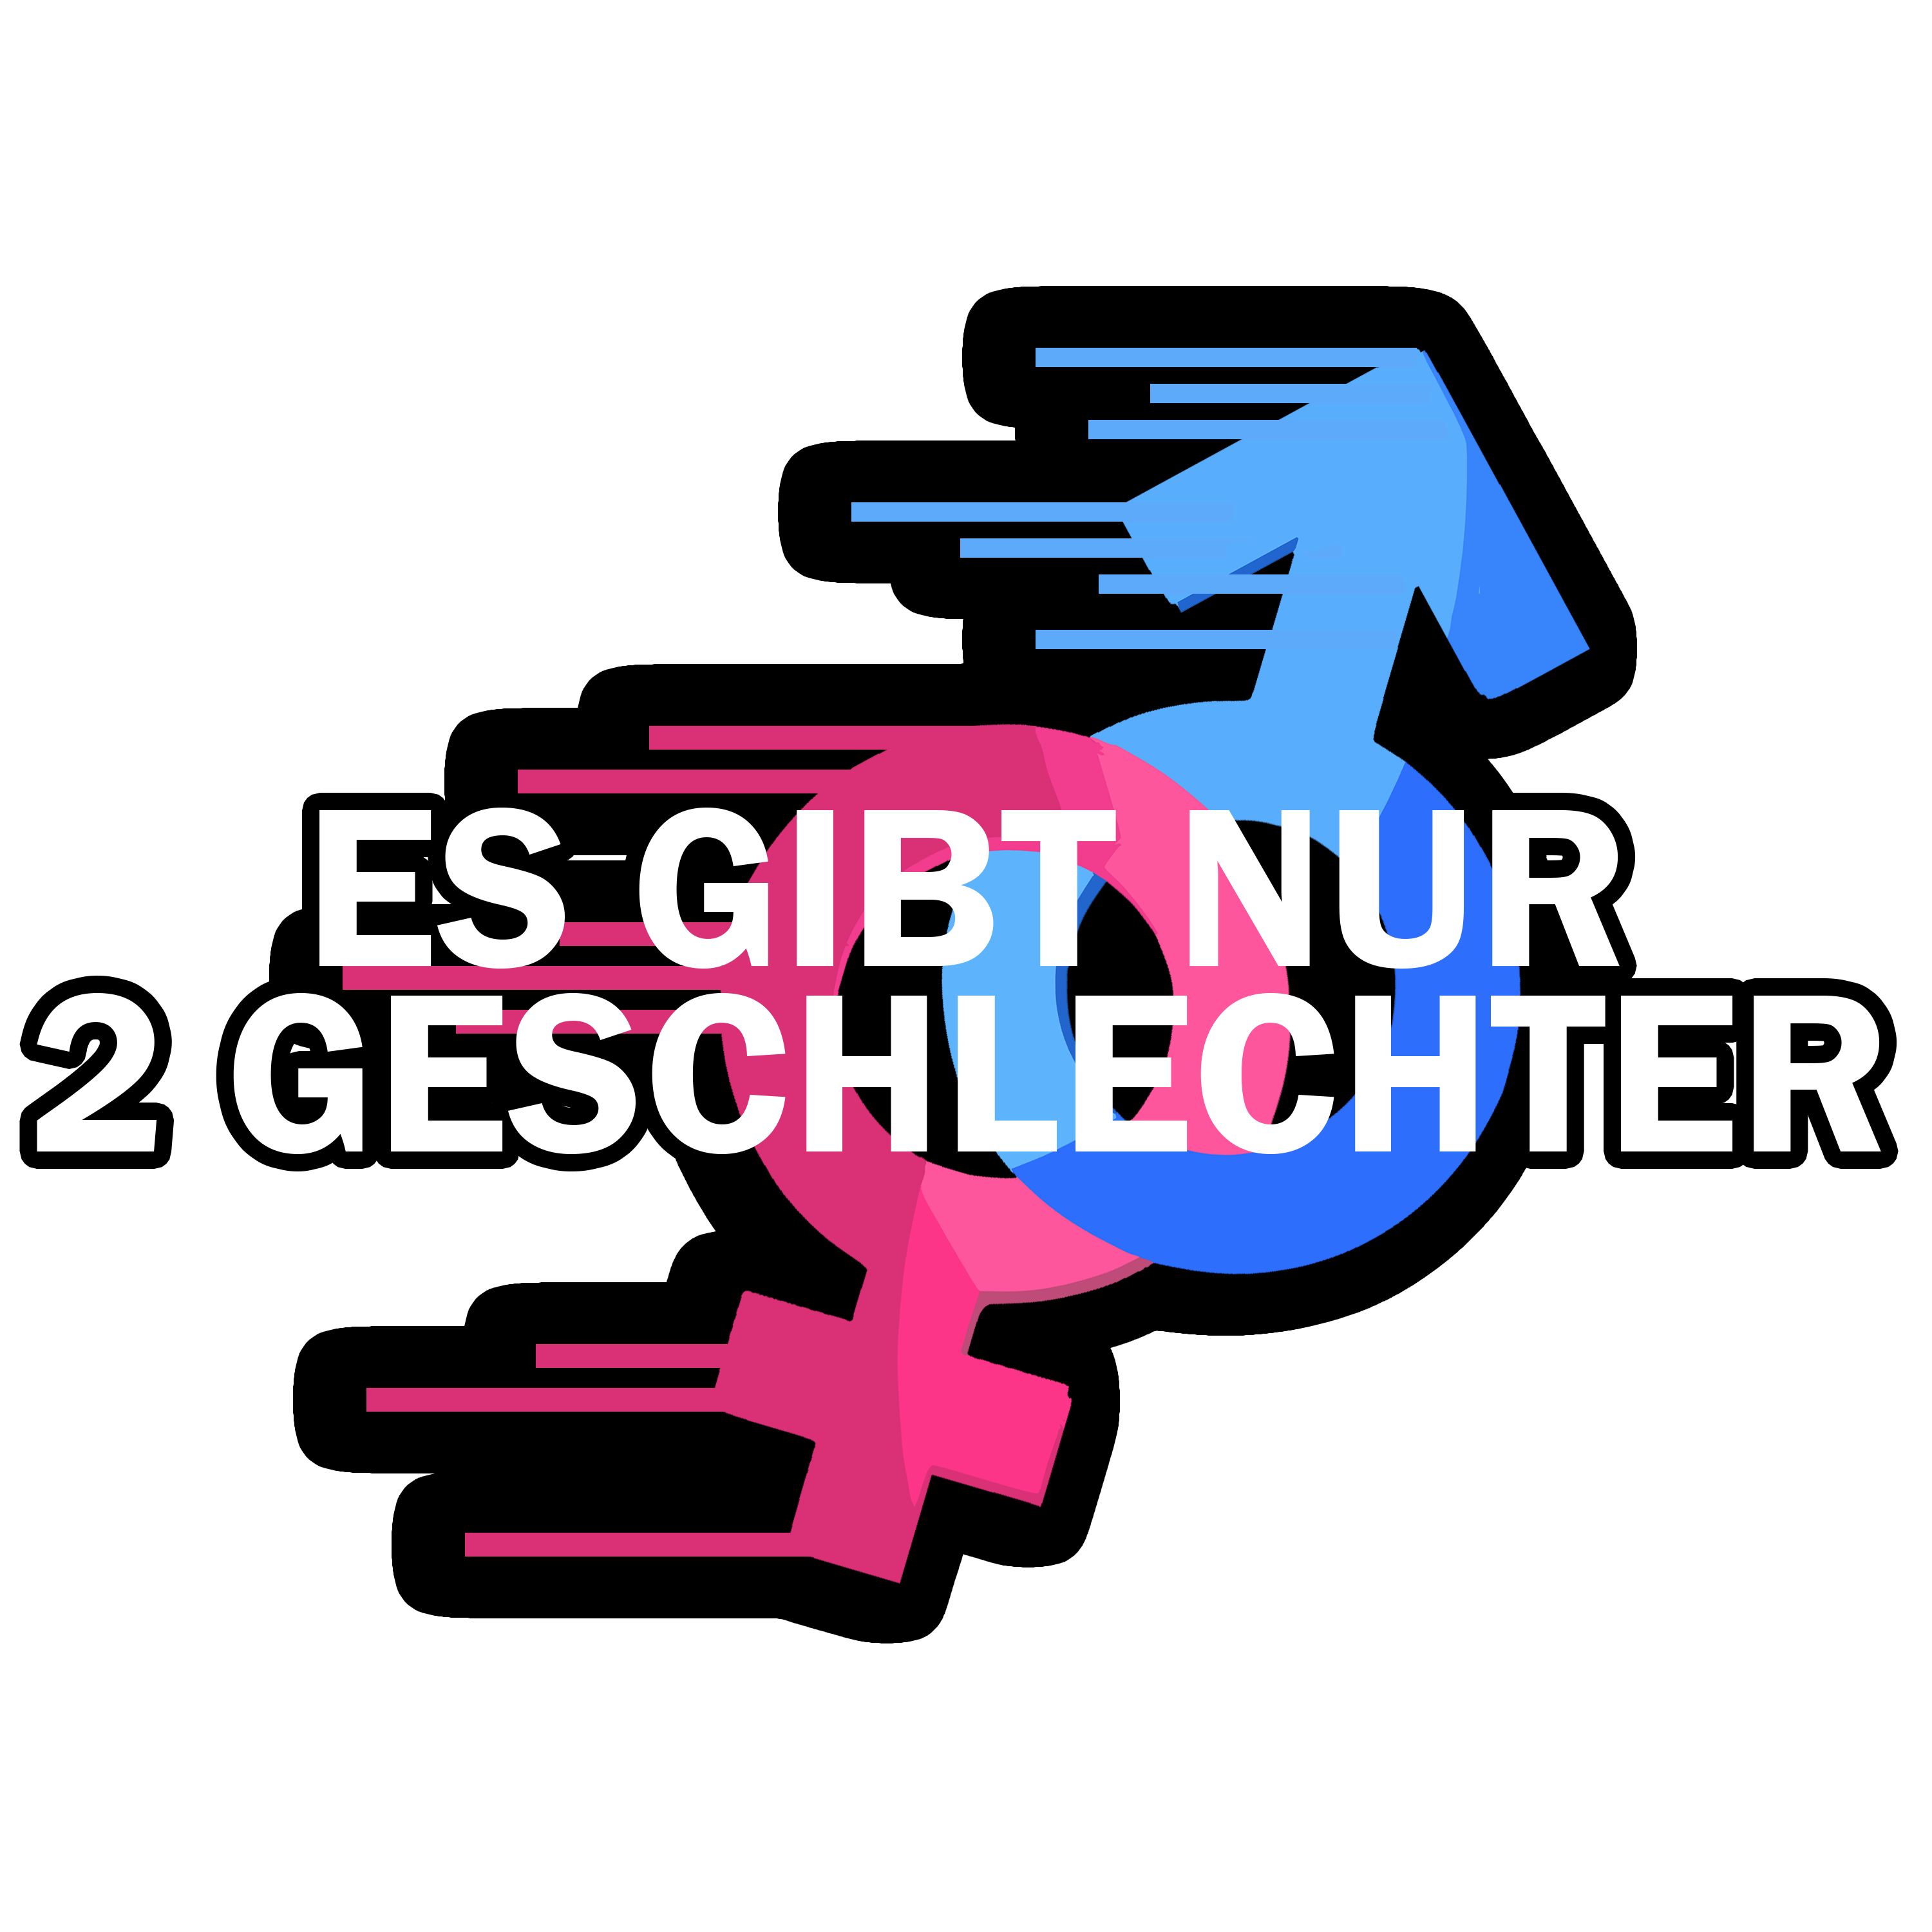 Runter mit dem Männlichkeitswahn (Aufkleber, linke-aufkleber.de, Gender /  Geschlechter, Aufkleber, Accessoires)